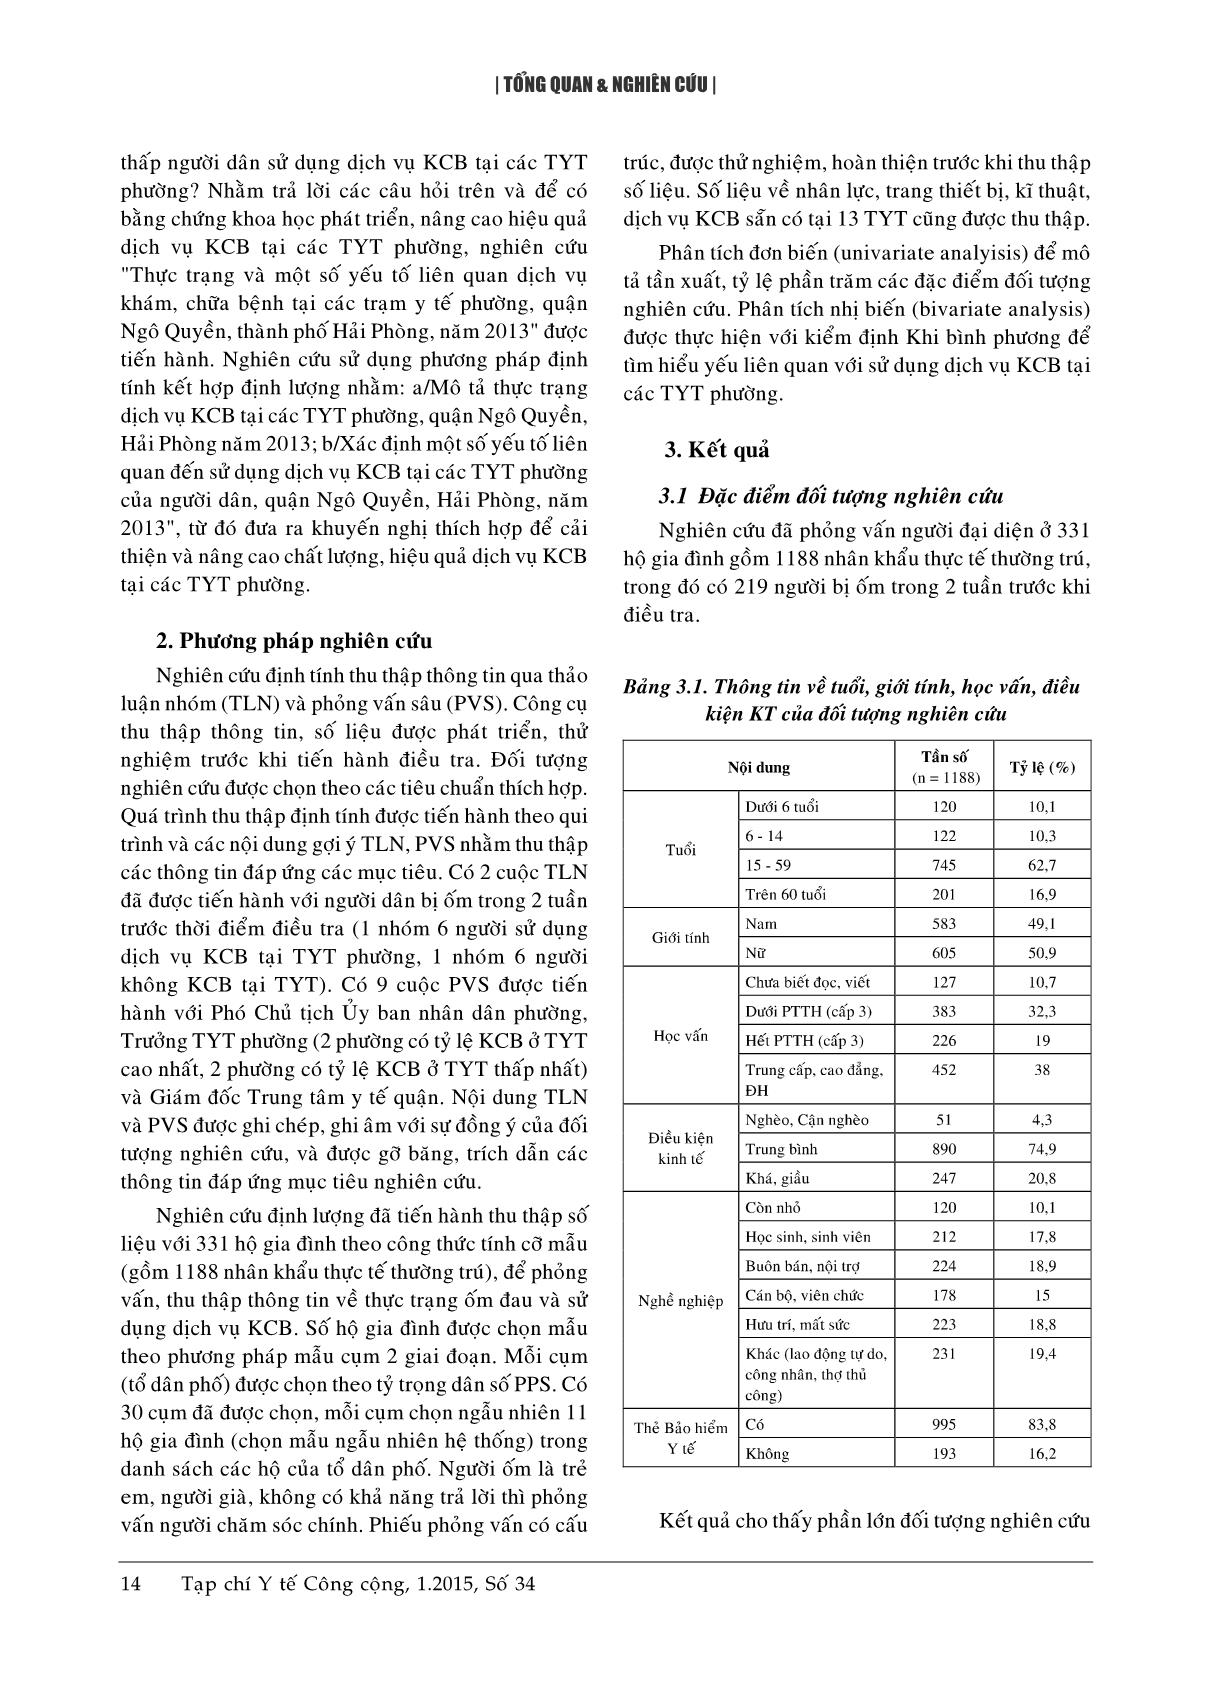 Thực trạng và một số yếu tố liên quan dịch vụ khám chữa bệnh tại các trạm y tế phường thuộc quận Ngô Quyền, Hải Phòng năm 2013 trang 3